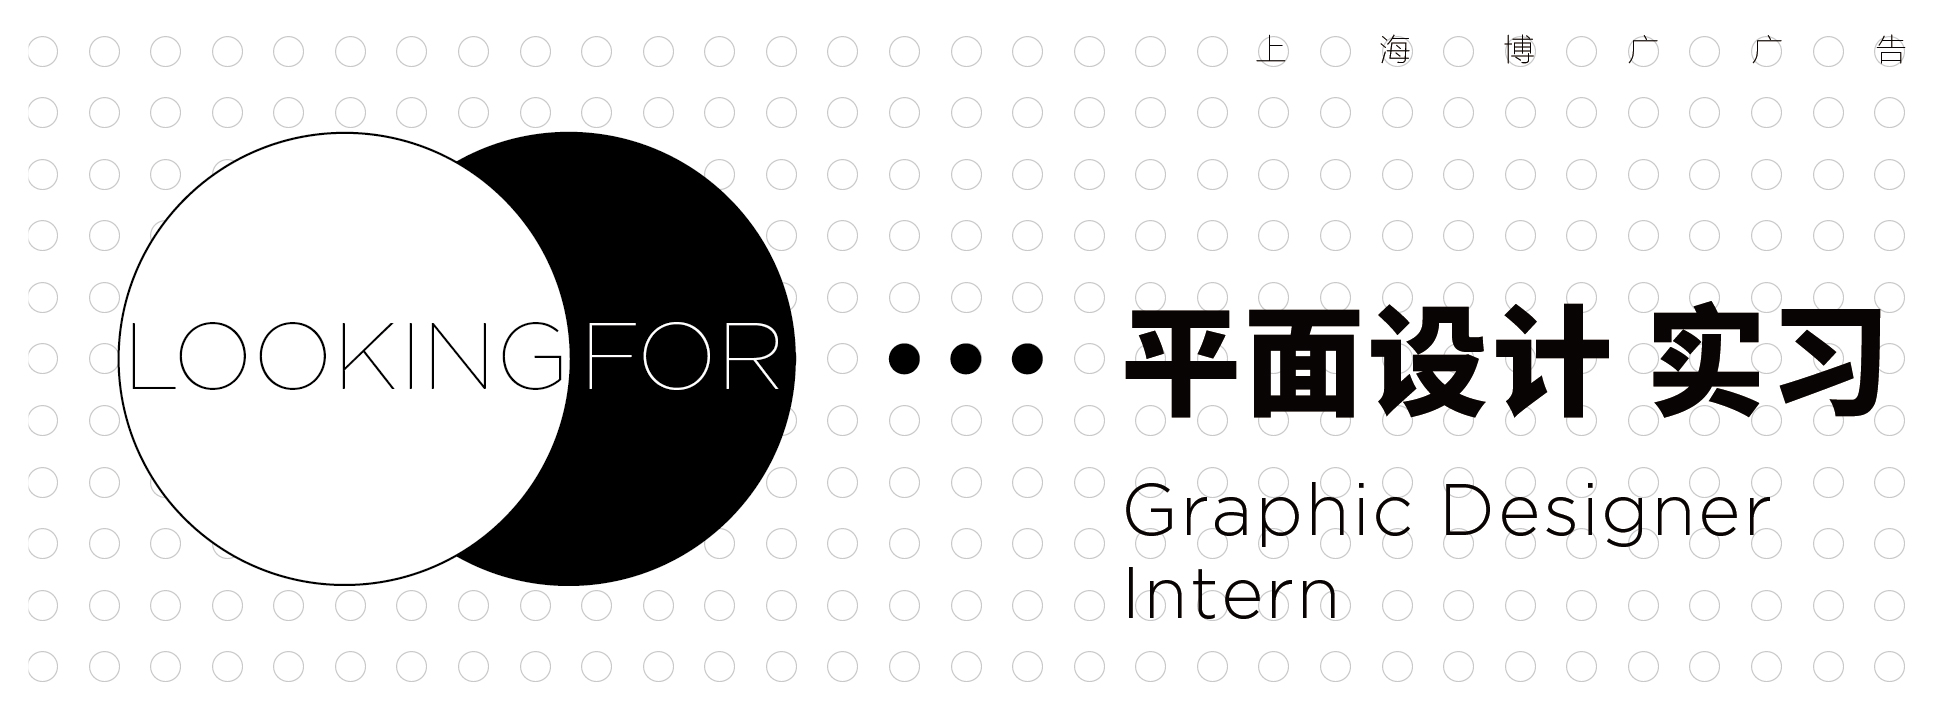 招聘banner_Designer(intern).jpg